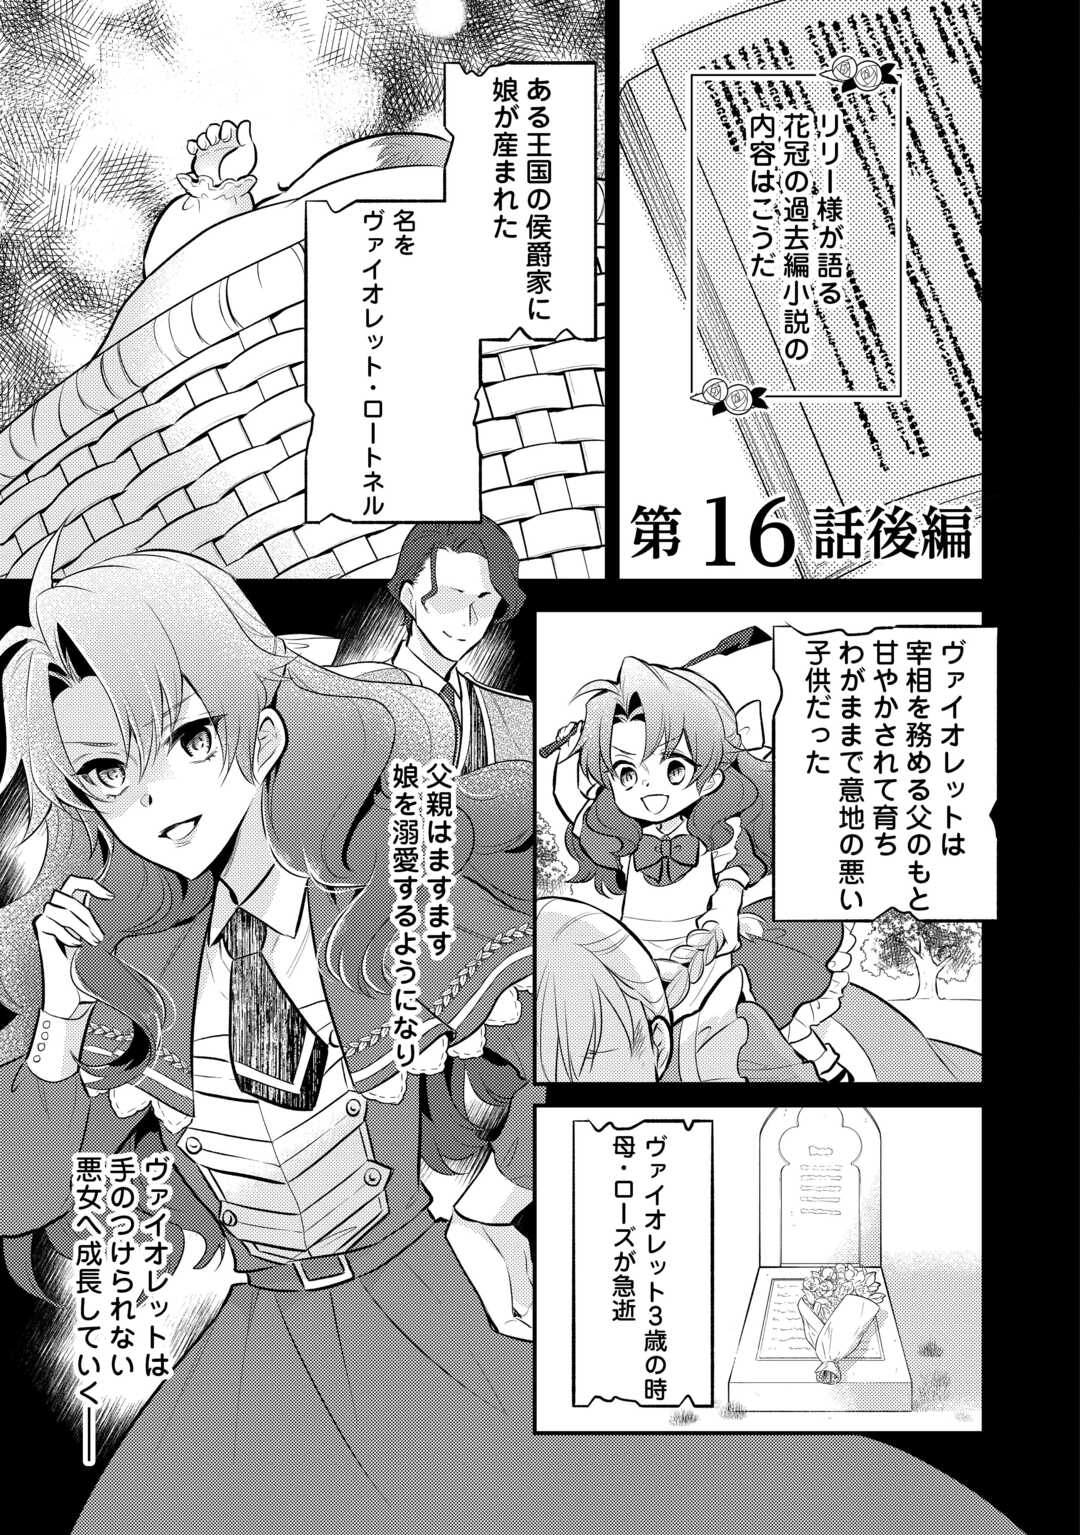 Akuyaku Reijou no Okaa-sama - Chapter 16.5 - Page 1